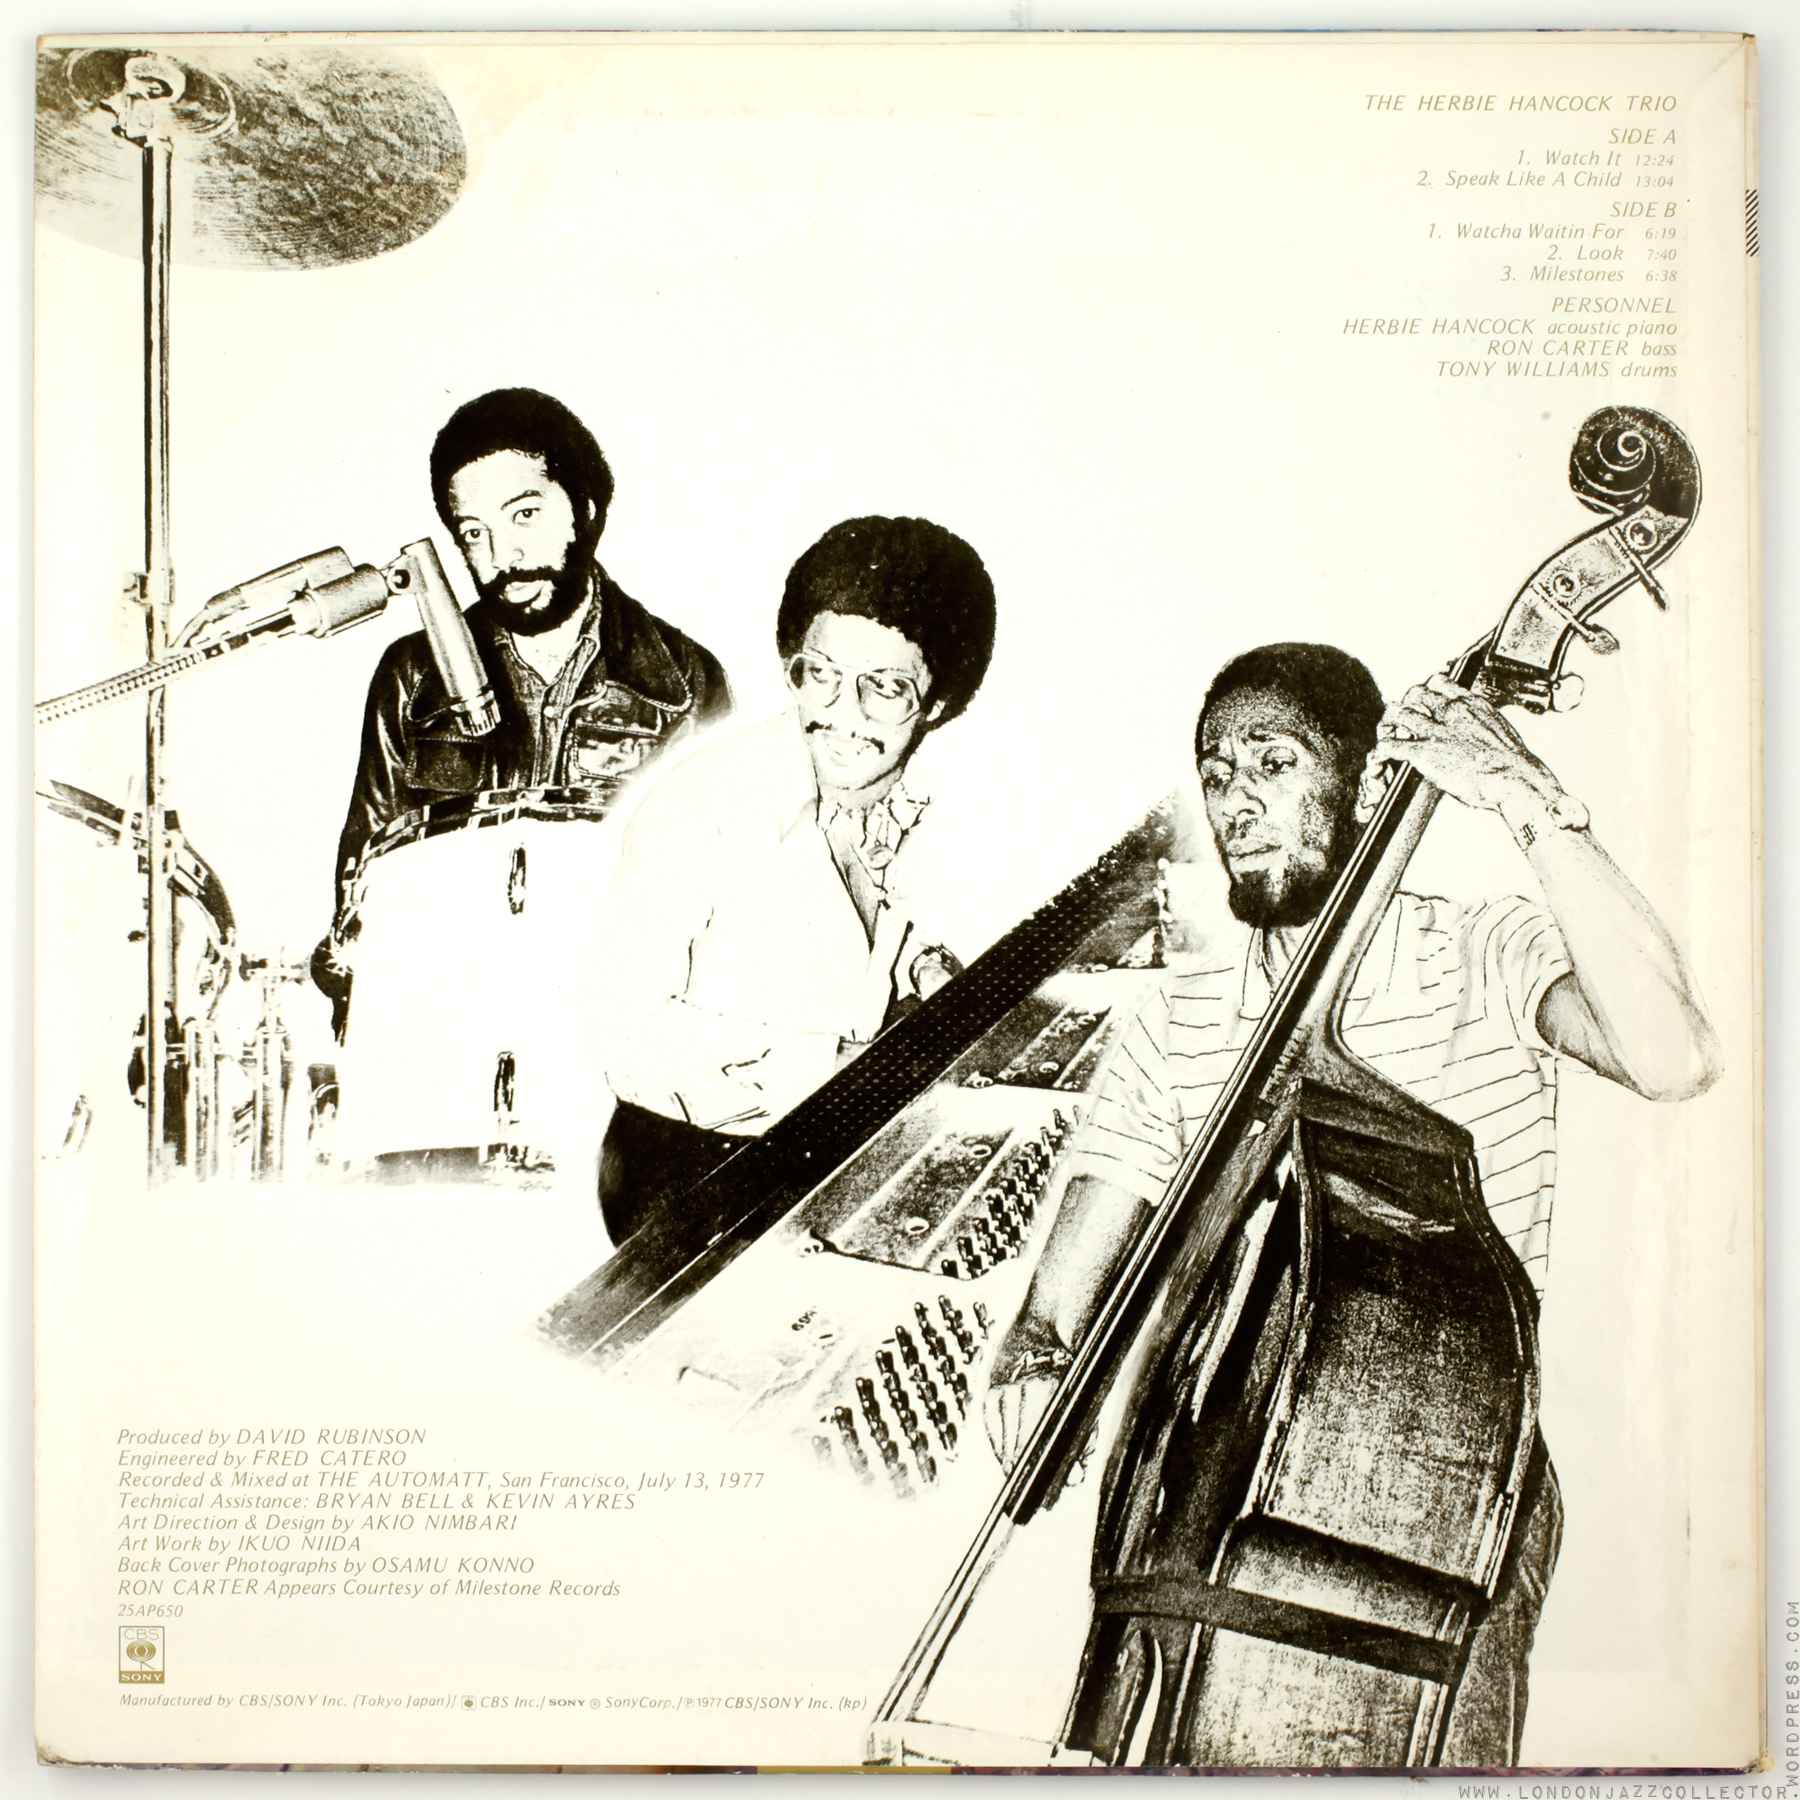 The Herbie Hancock Trio